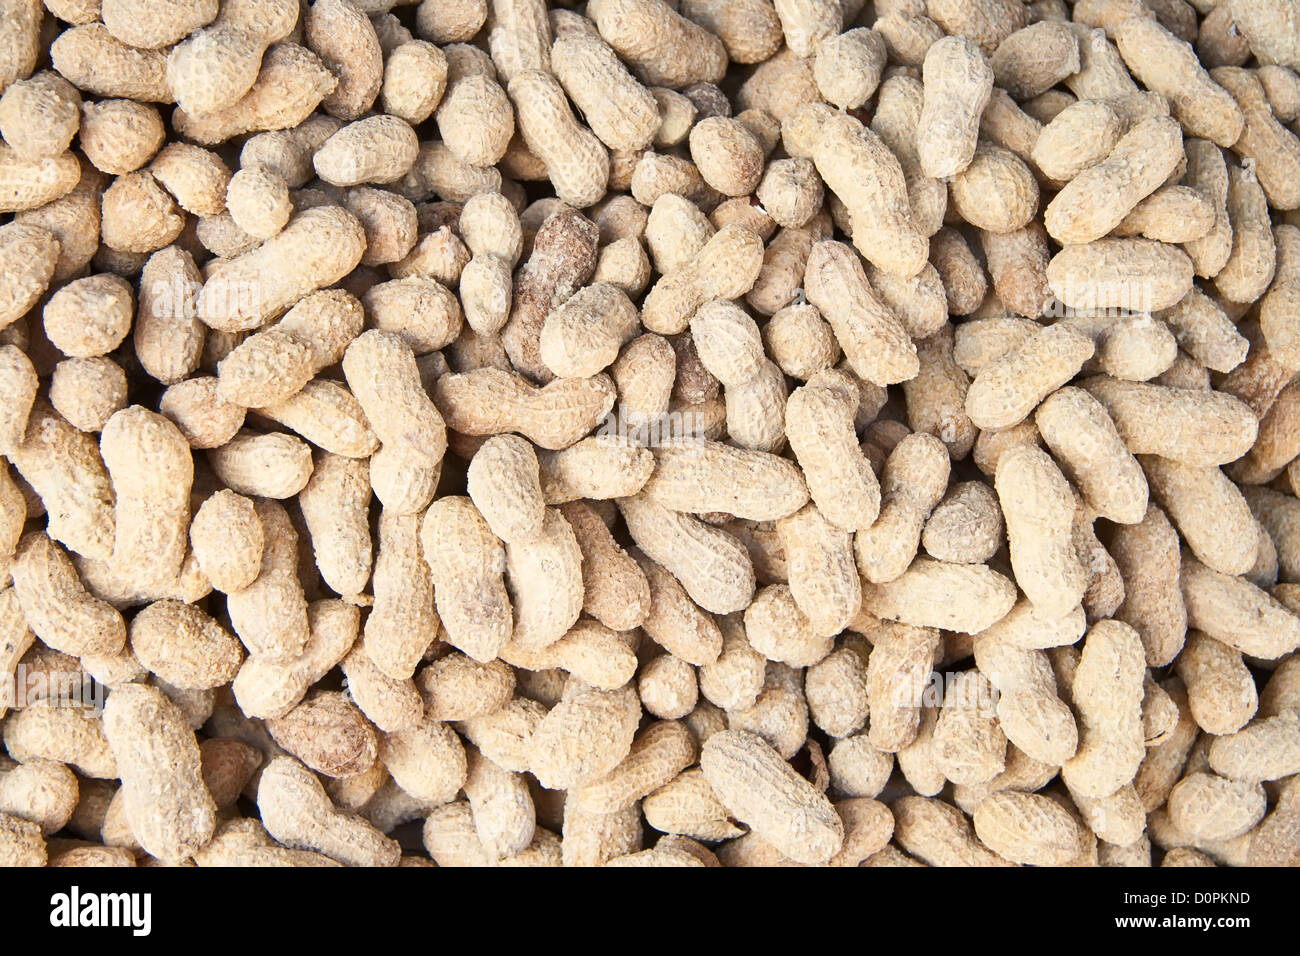 Bio gesalzene Erdnüsse In der Schale in A Street Market Stockfotografie -  Alamy